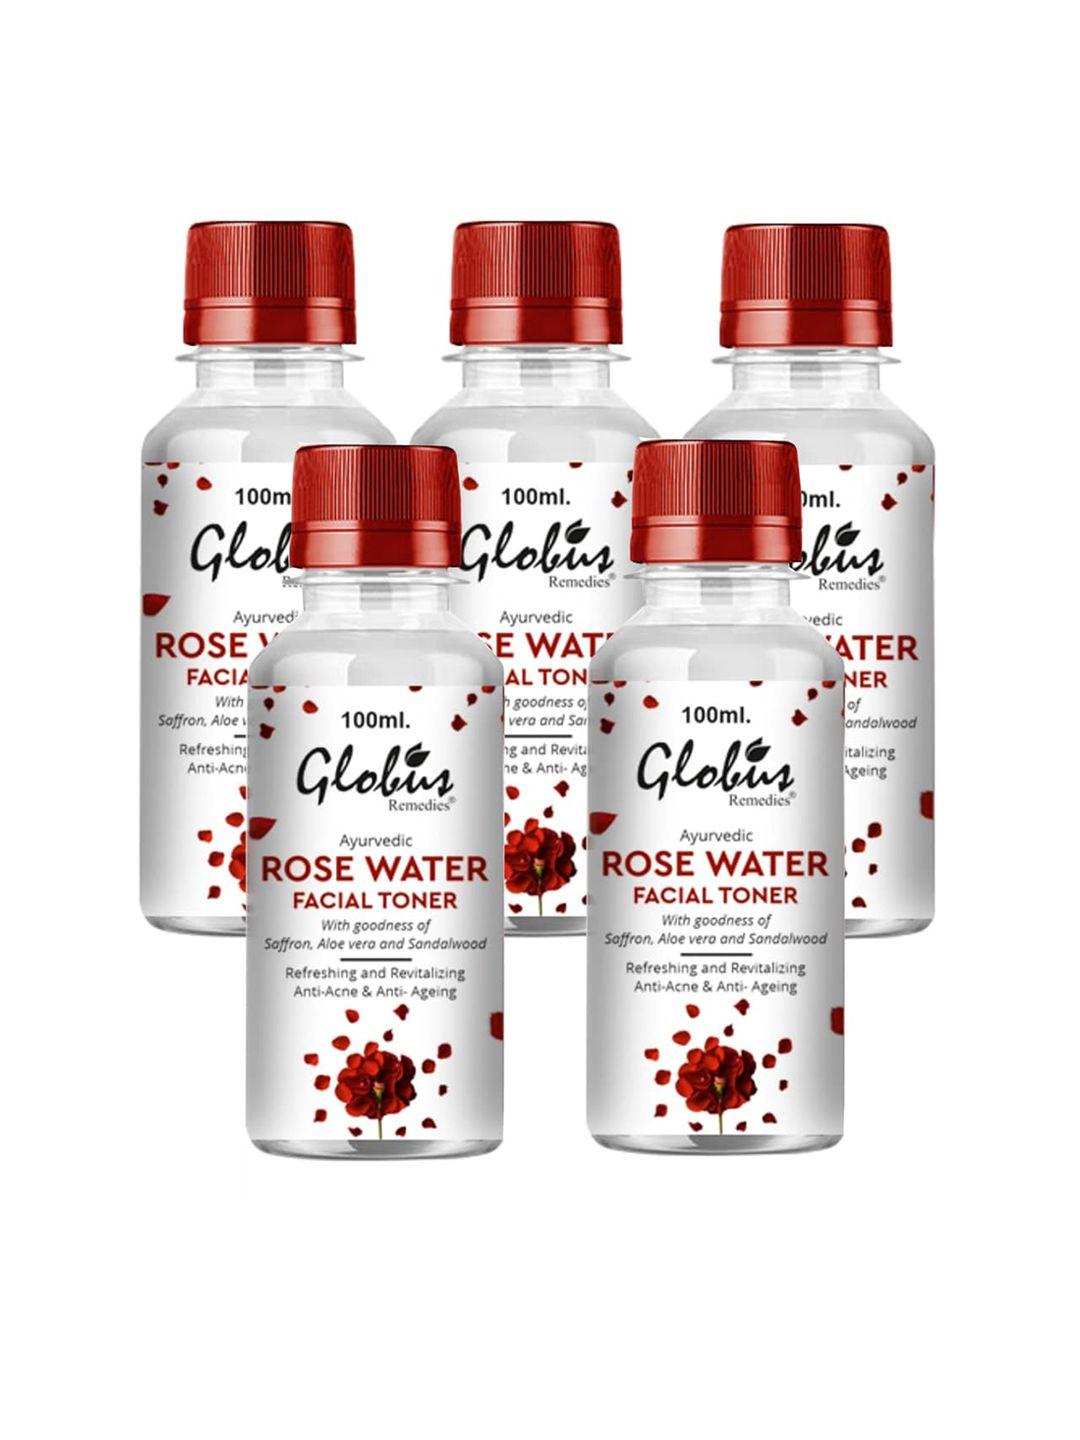 globus remedies ayurvedic rose water facial toner-100 ml each